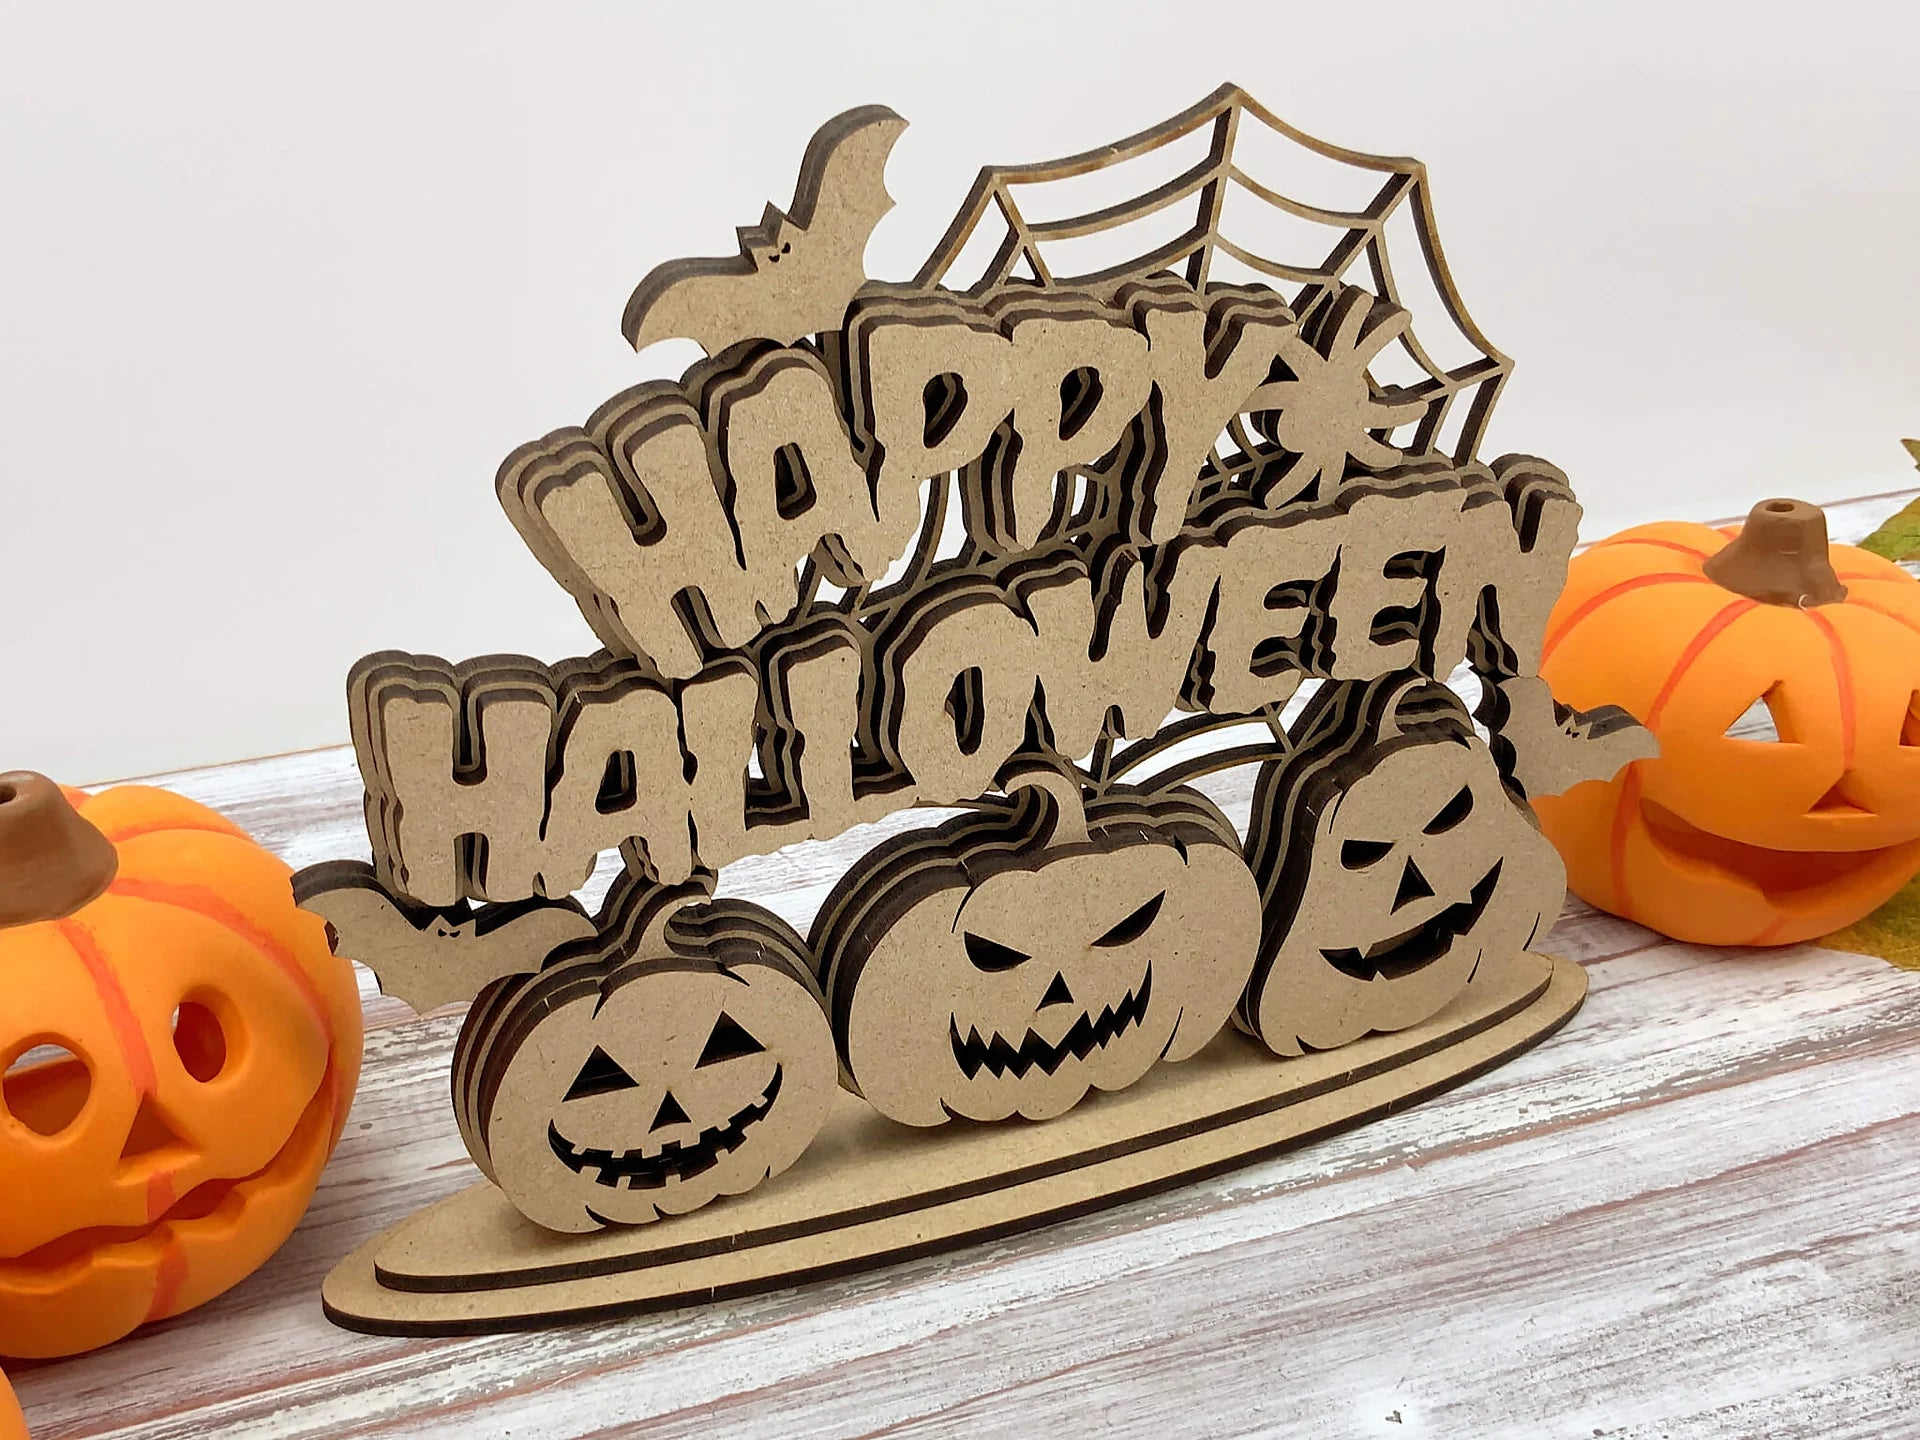 Eerie Spooky Season Pumpkins Sign